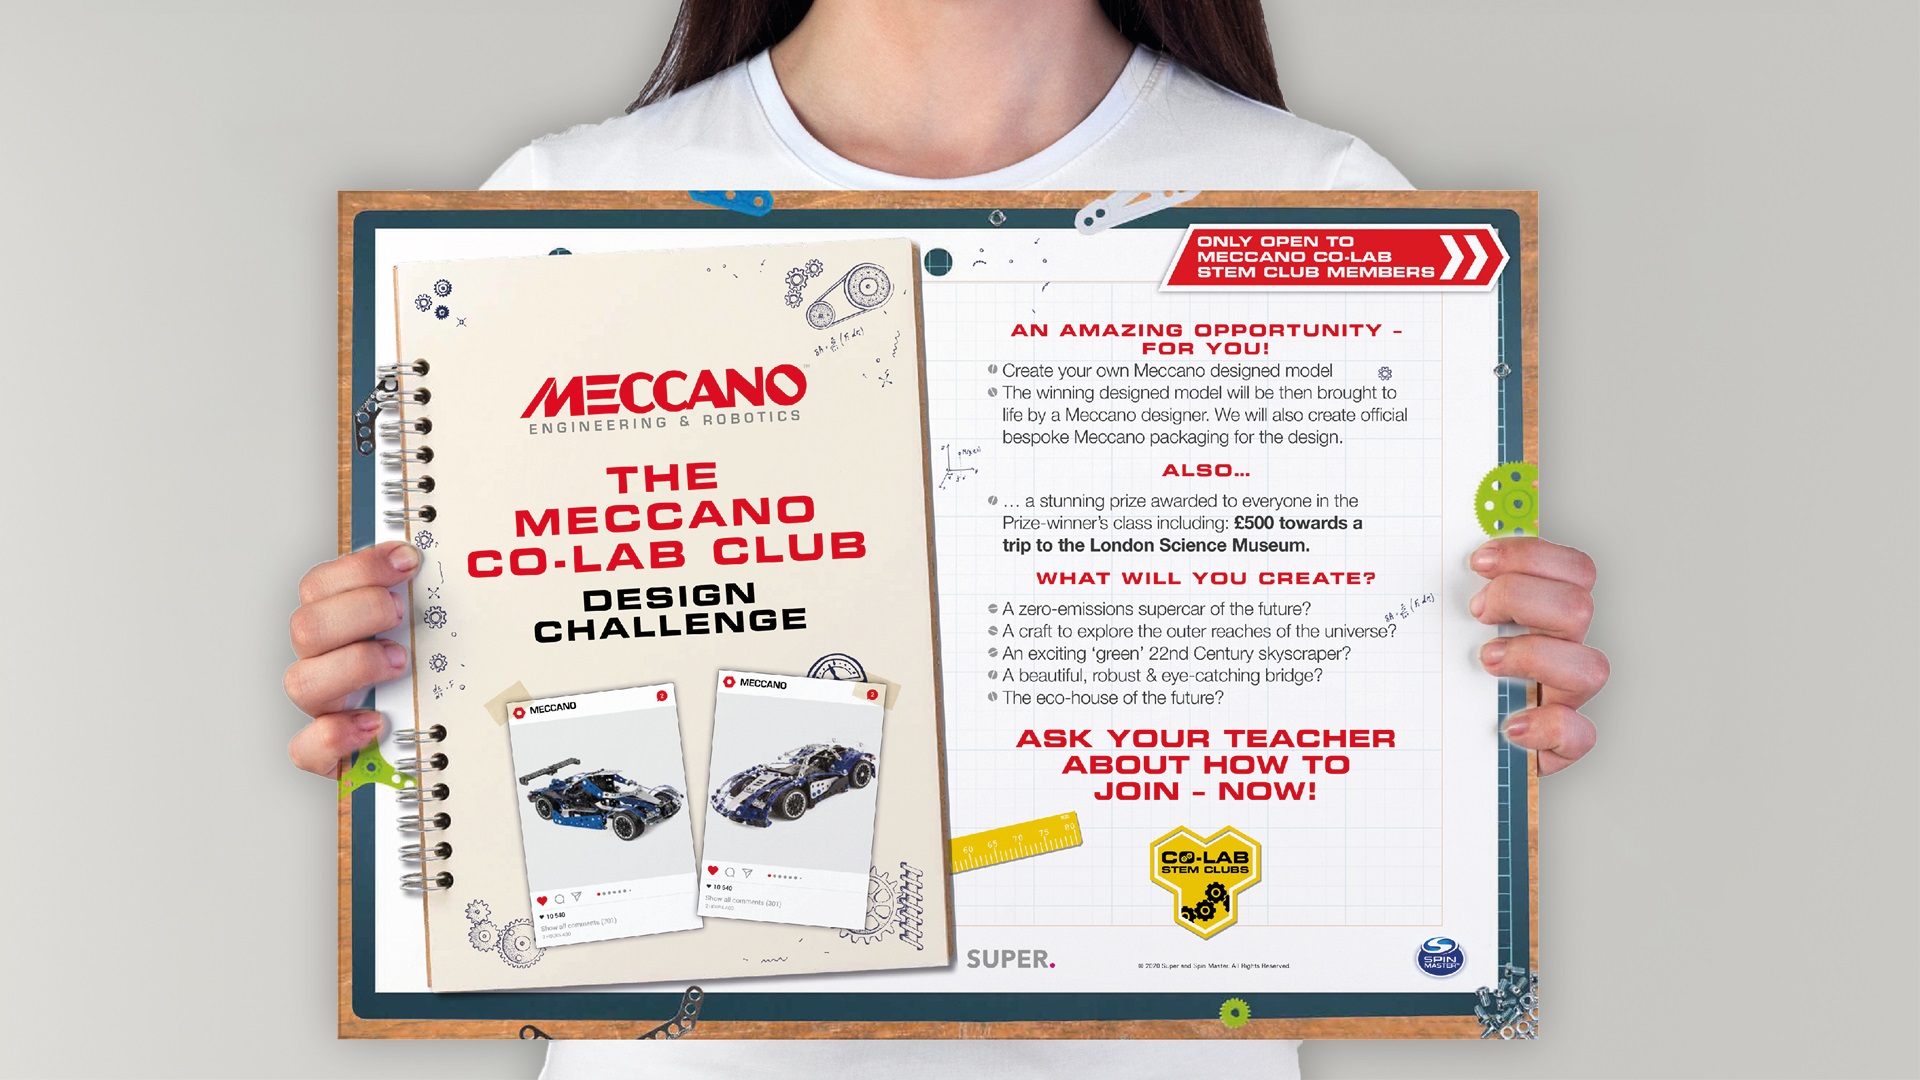 Meccano STEM schools campaign with SUPER